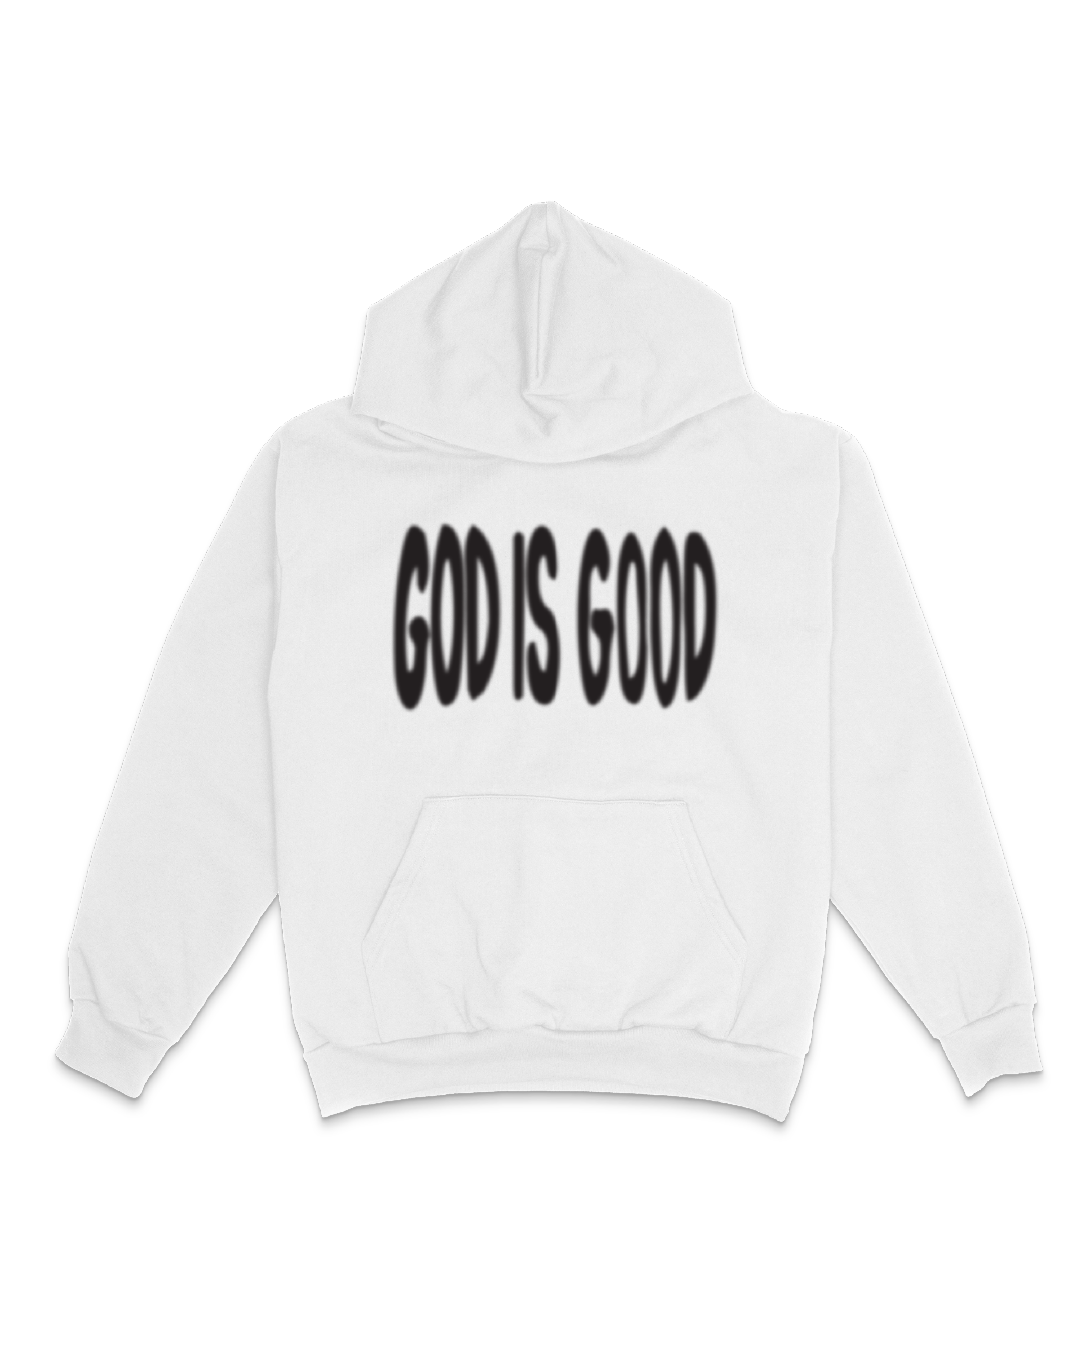 NEW || "God Is Good" Hoodie